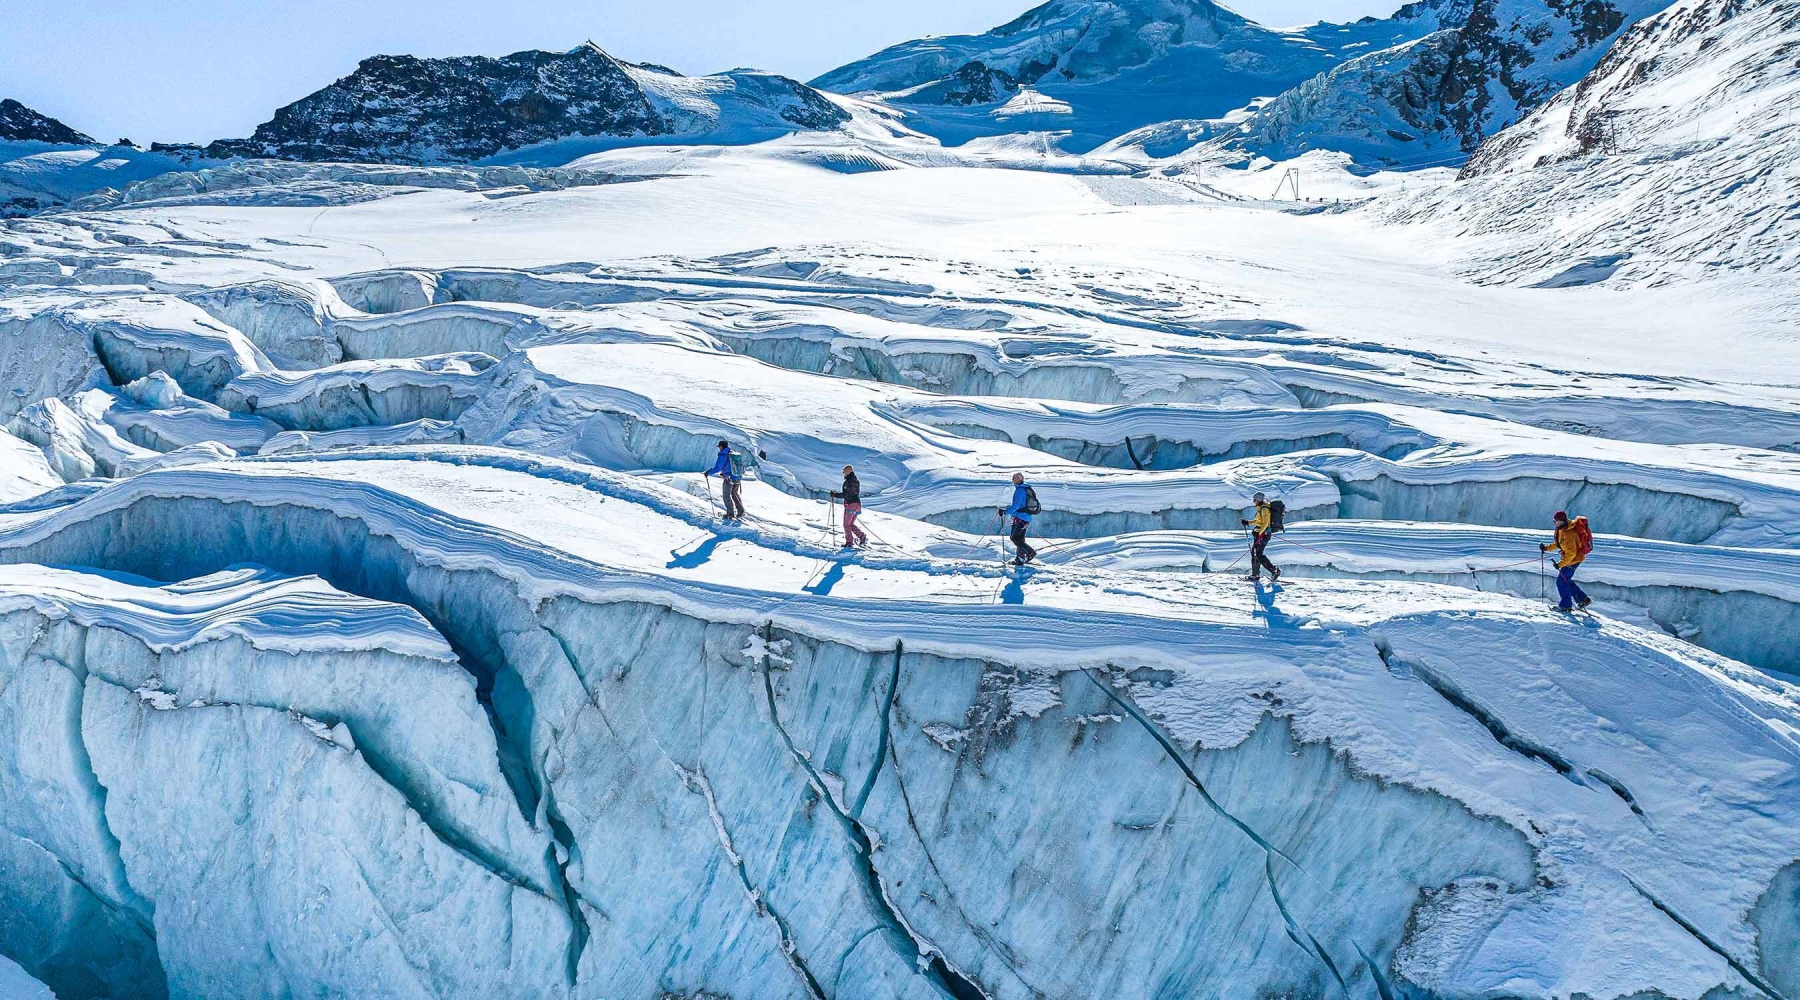 Excursions on the glacier